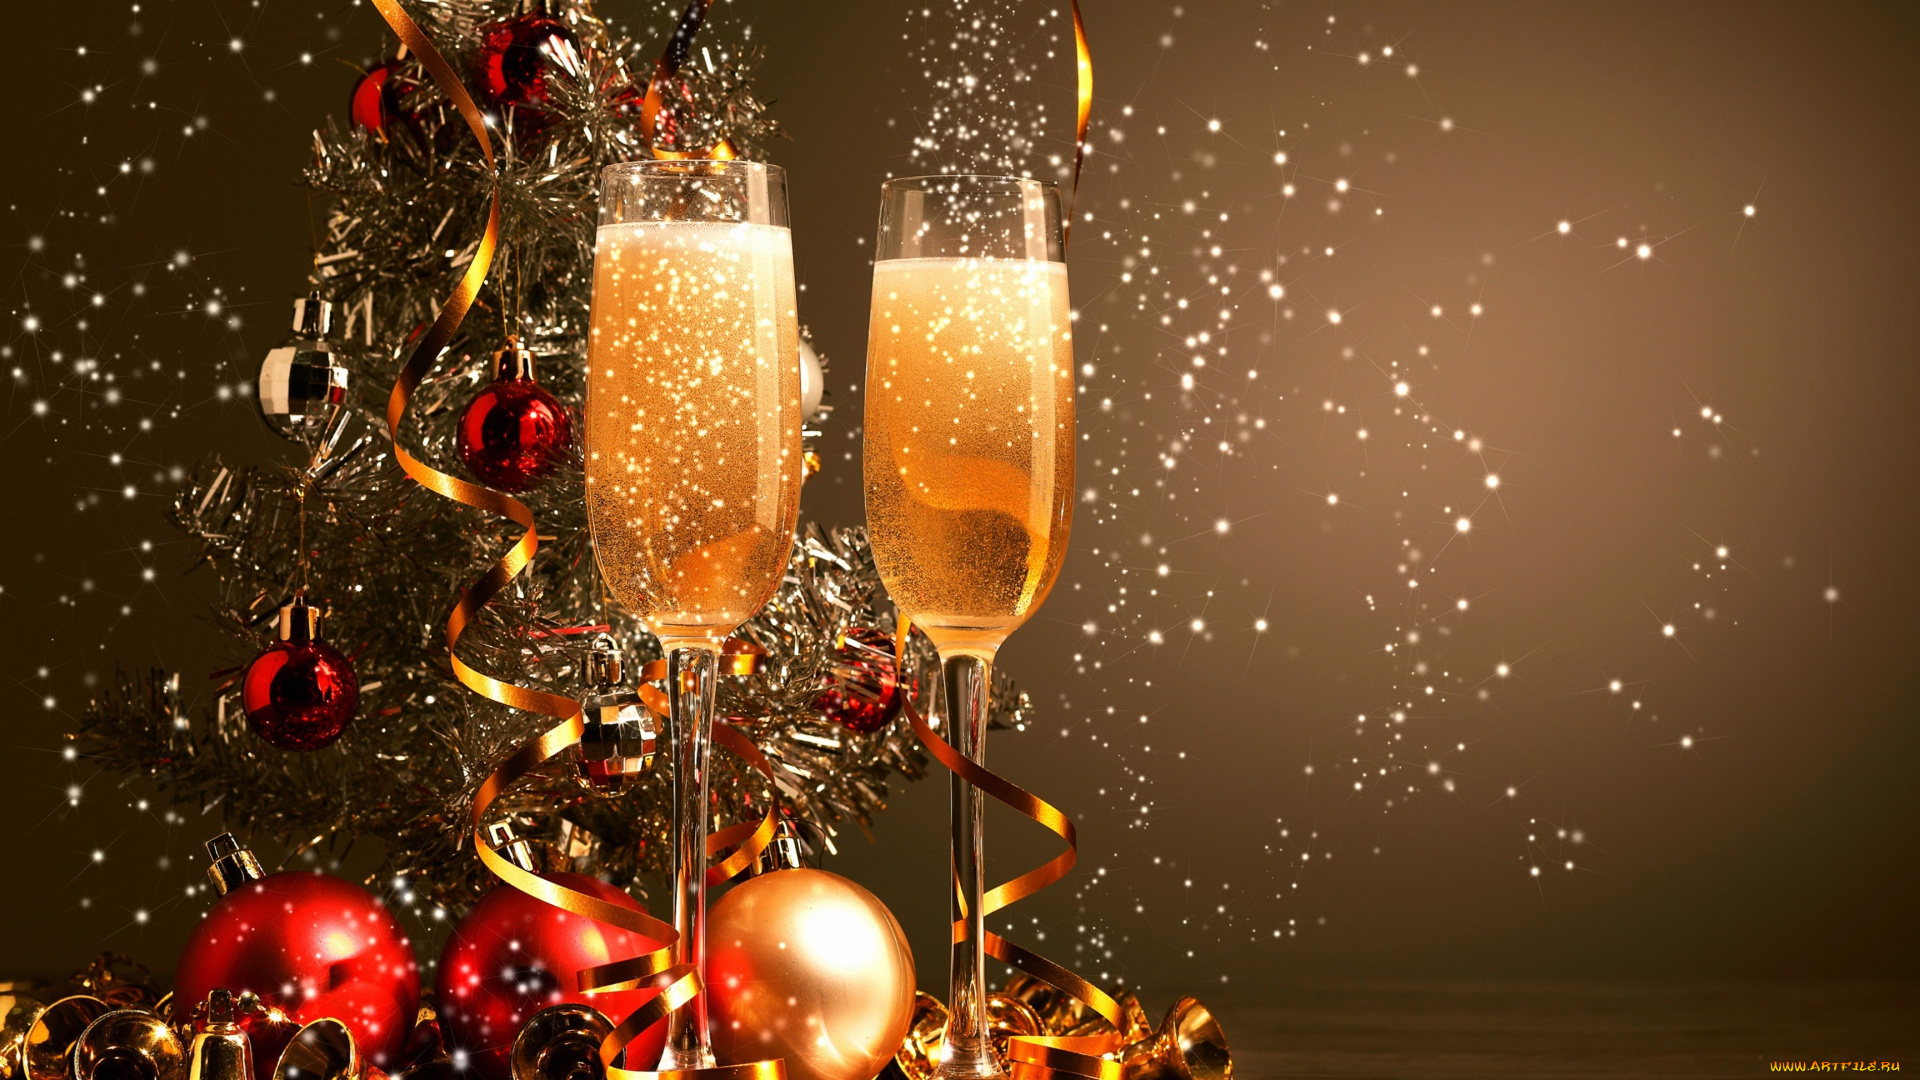 праздничные, угощения, два, фужера, с, шампанским, на, фоне, праздничной, елки